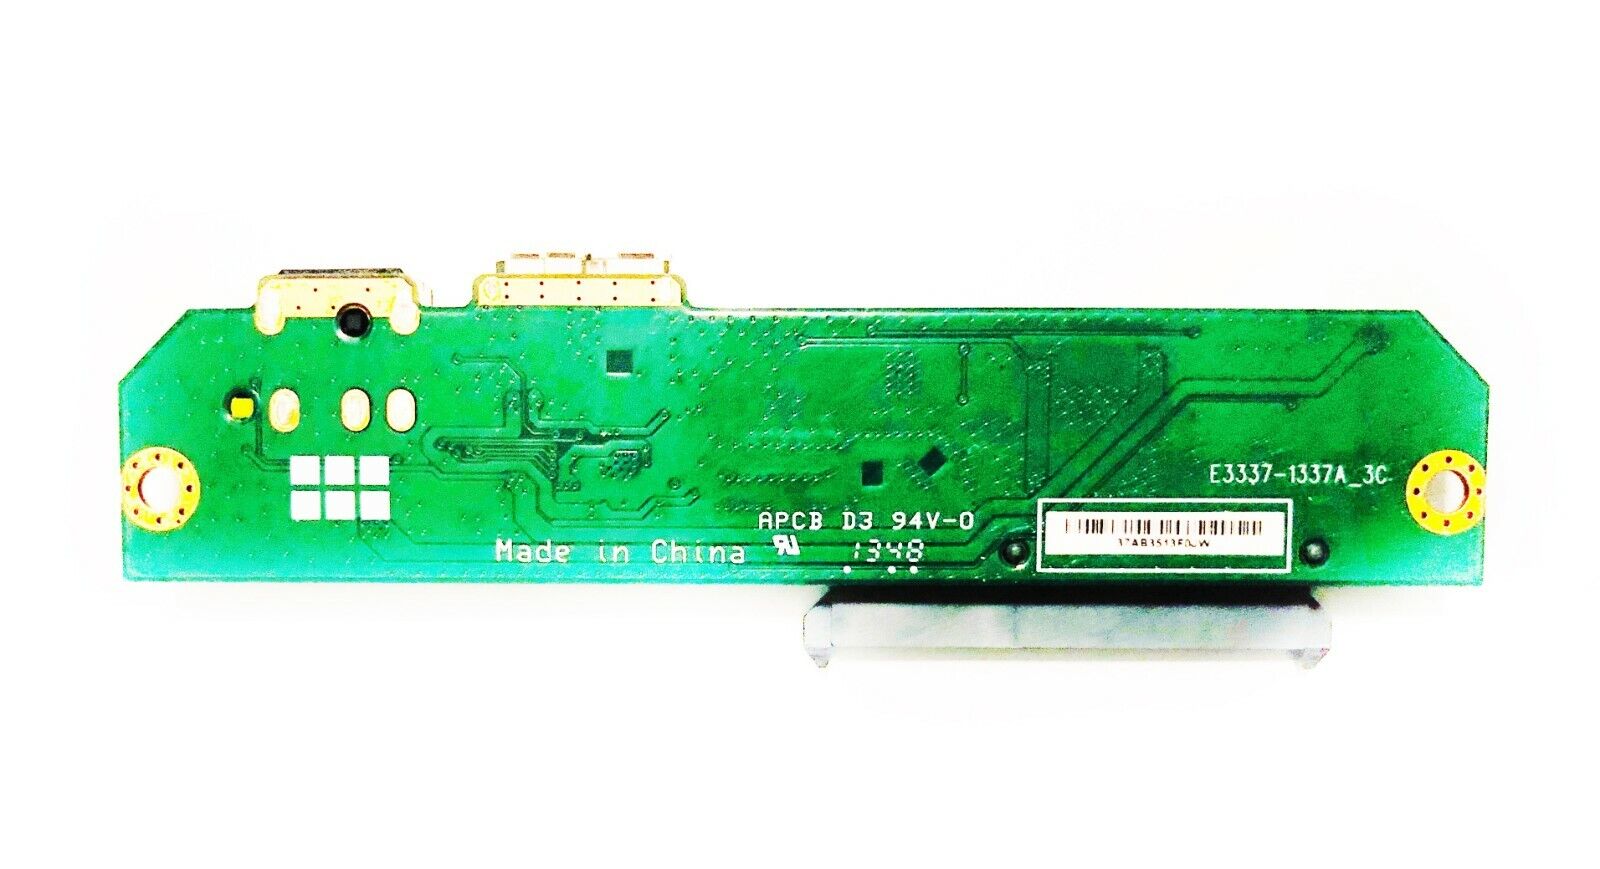 Seagate Backup Plus PCB Controller Board E3337-1337A_3C USB 3.0 Adapter Q177